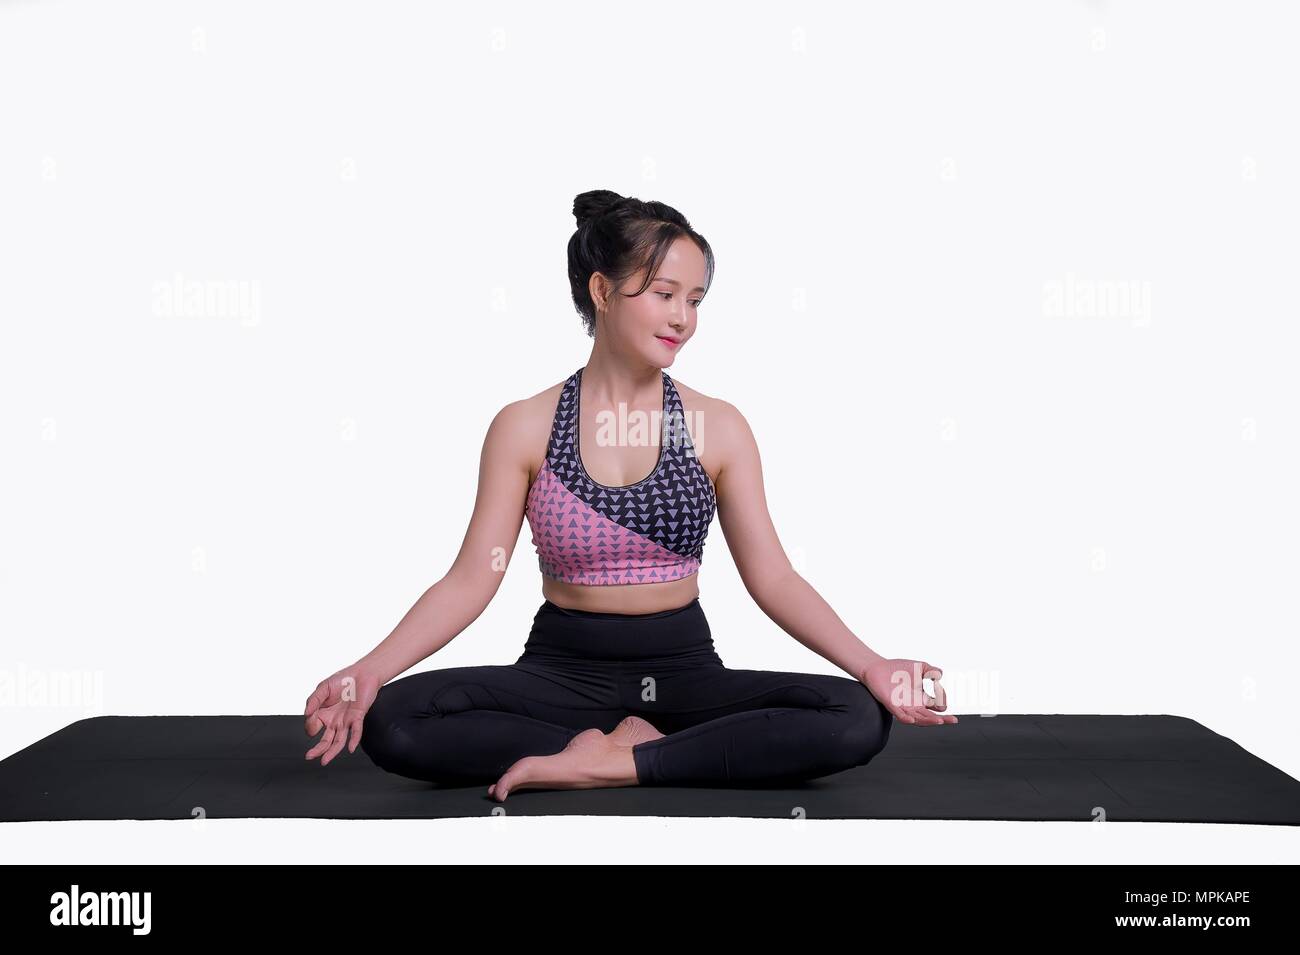 Yoga-stellungen Eine gesunde Konzentration und Form. Frau Yoga Praxis auf weißem Hintergrund Stockfoto